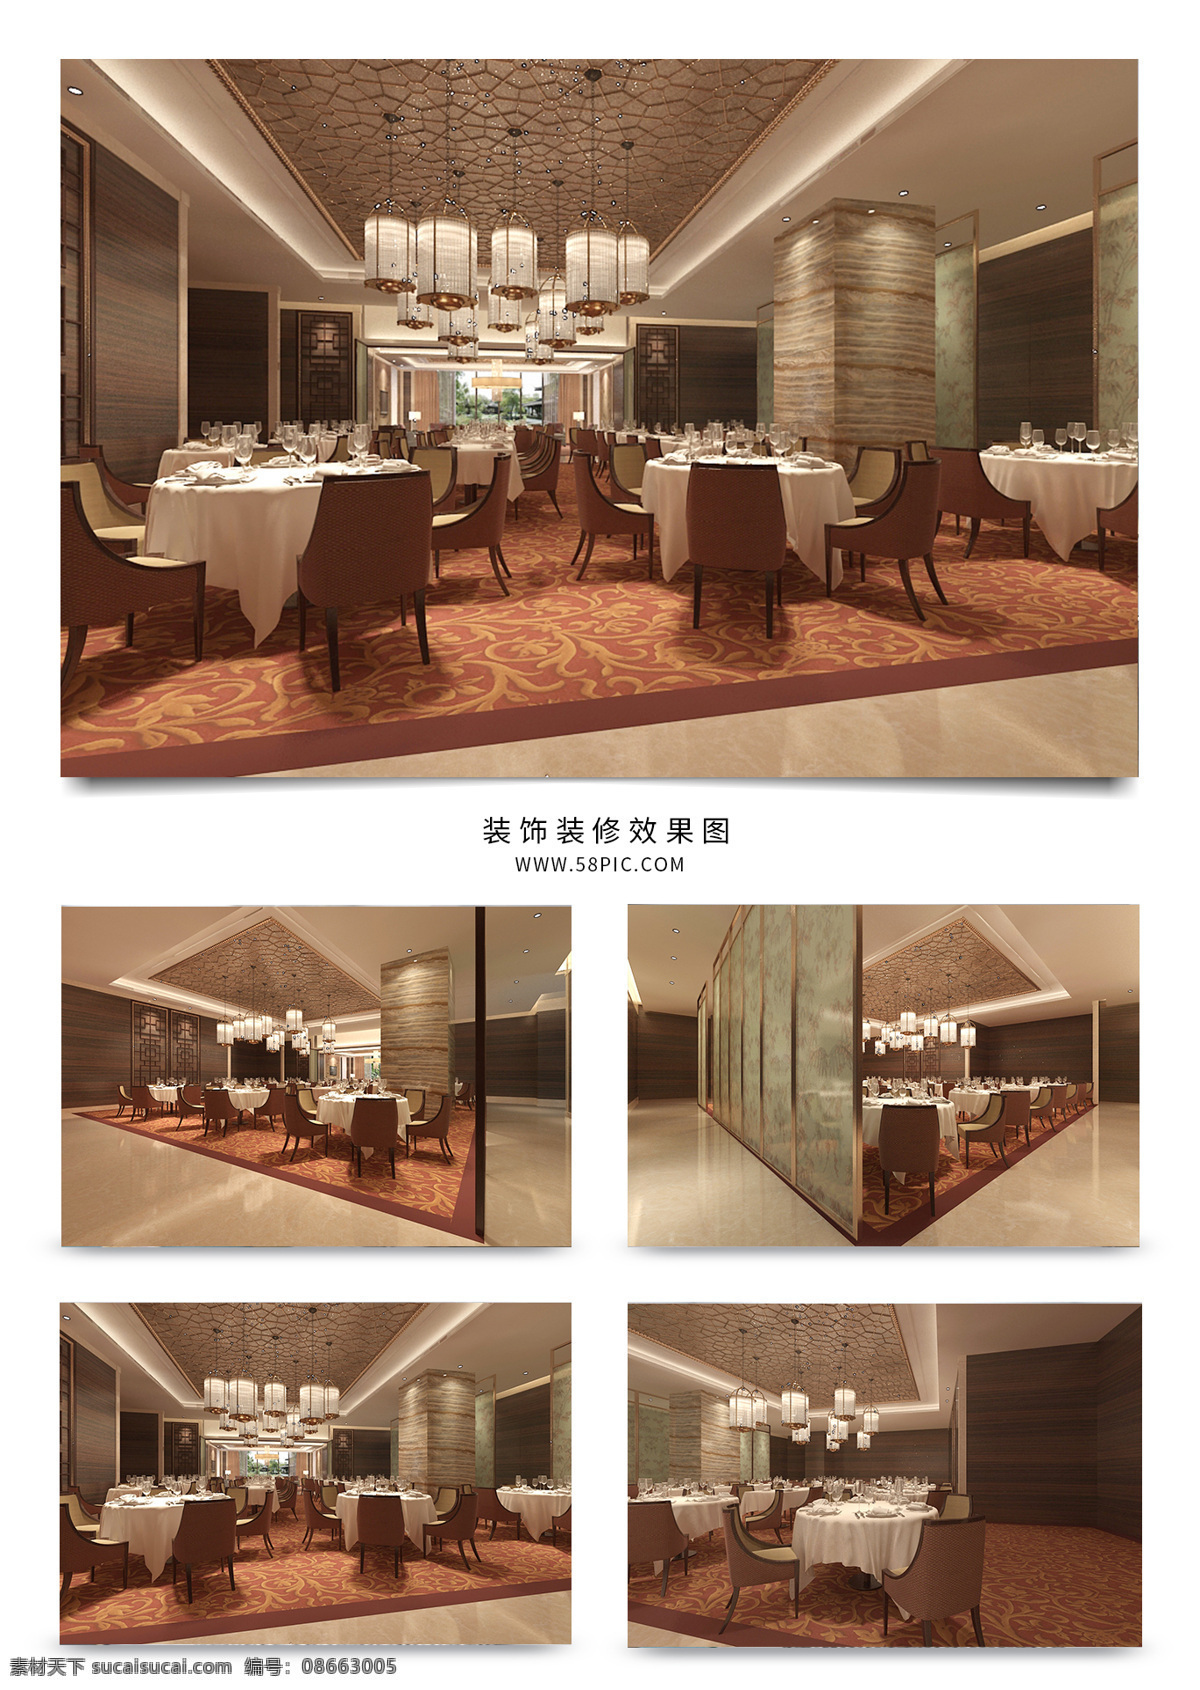 现代 中式 风格 酒店 大堂 餐厅 背景墙 门 地板 沙发 大厅 走廊 餐桌 椅子 大理石 地毯 挂画 模型 效果图 茶几